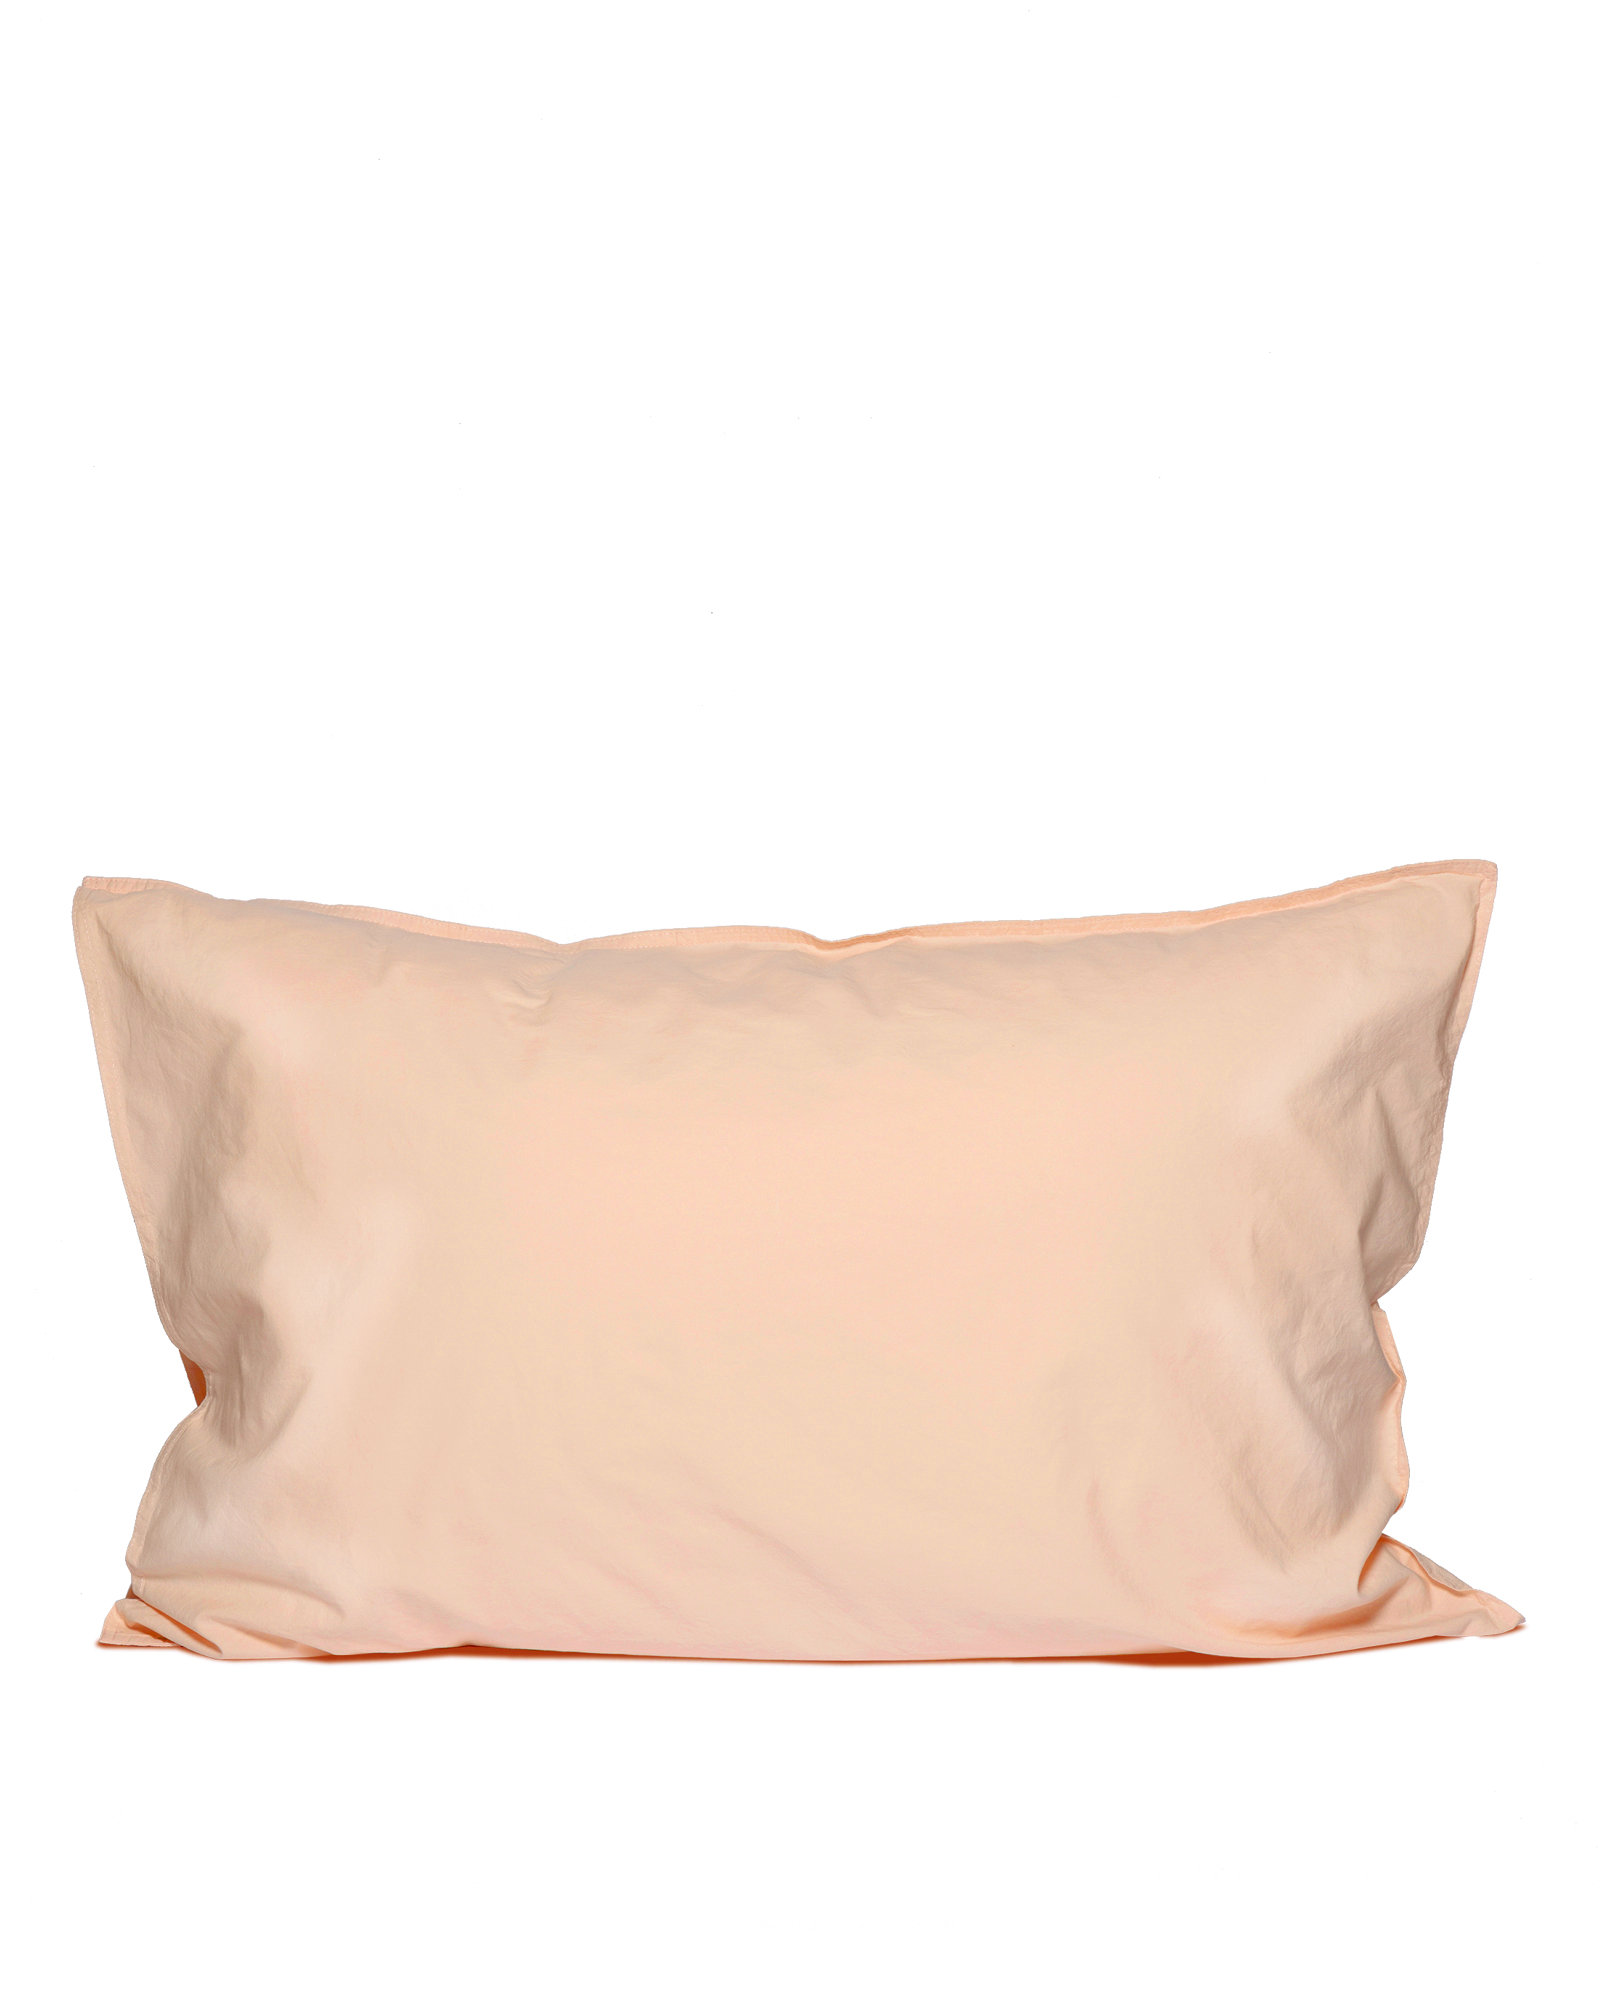 Pillowcase SLEEPY SATEEN Peach